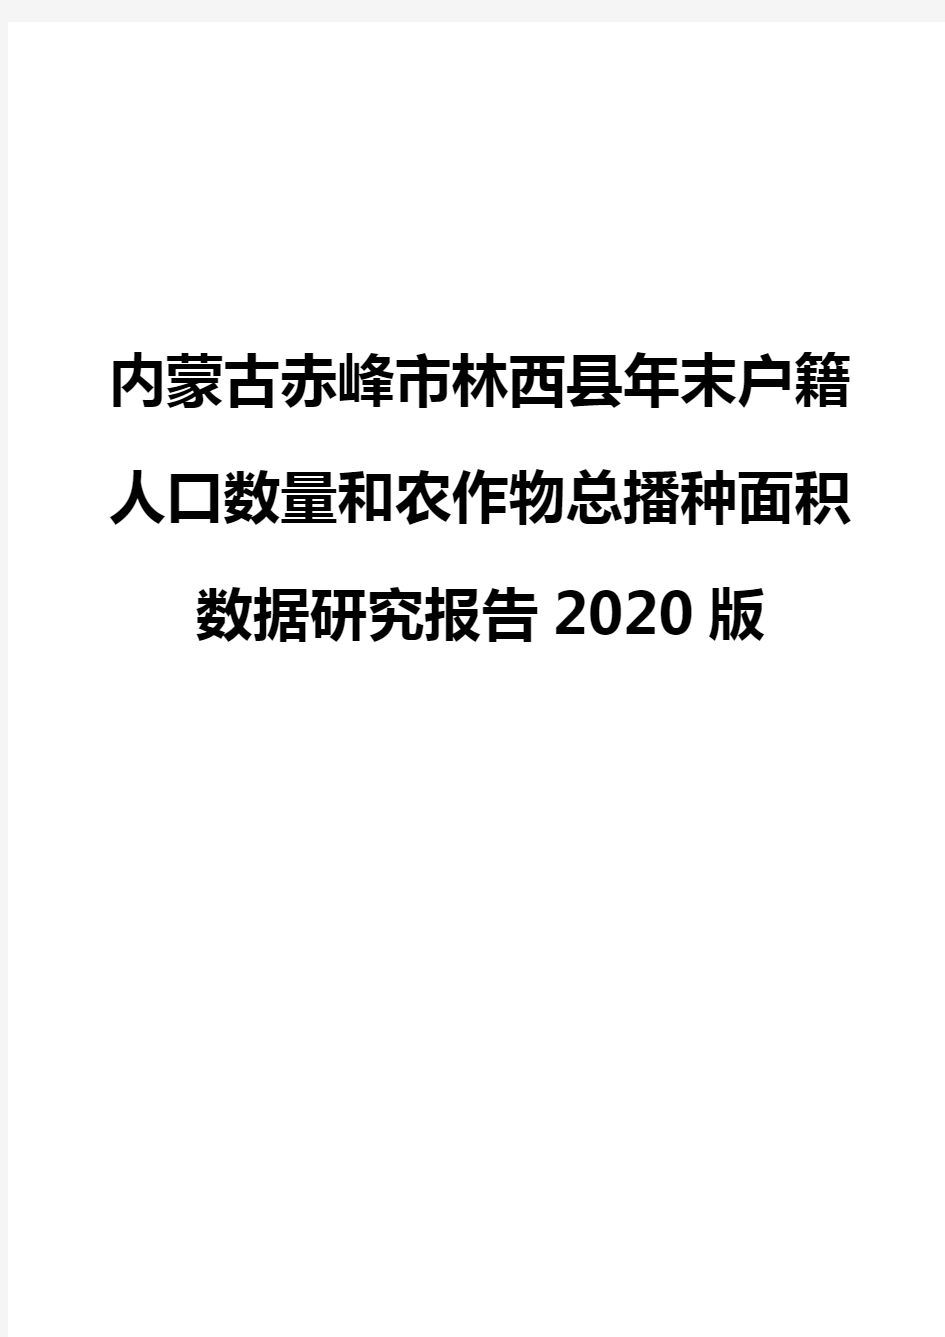 内蒙古赤峰市林西县年末户籍人口数量和农作物总播种面积数据研究报告2020版